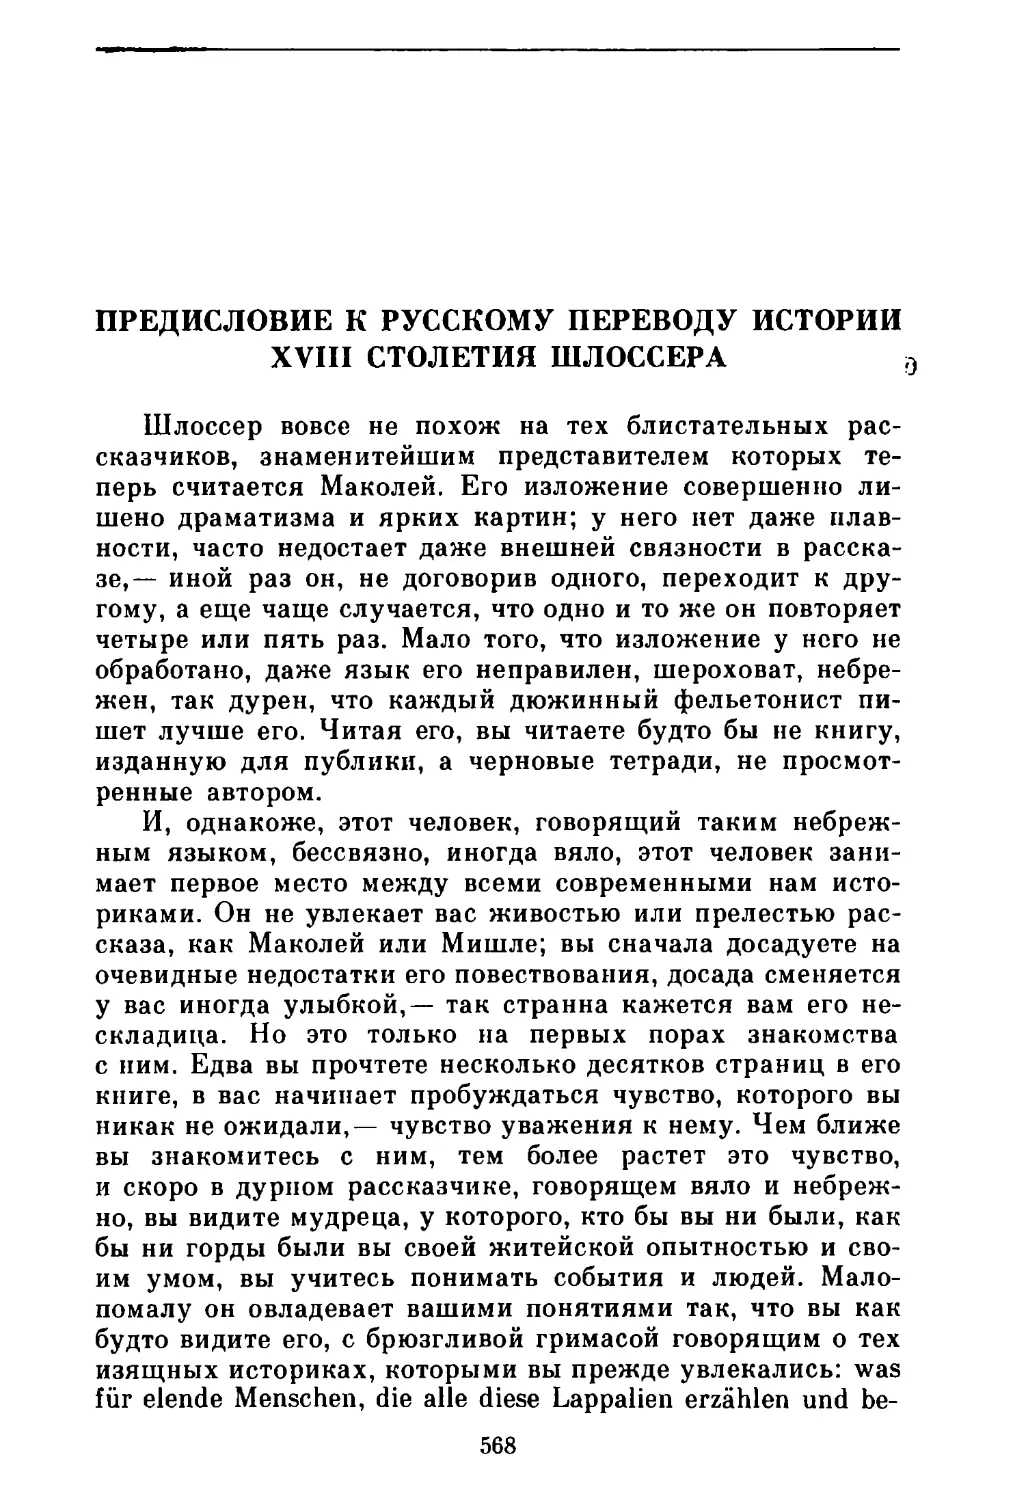 Предисловие к русскому переводу истории XVIII столетия Шлоссера